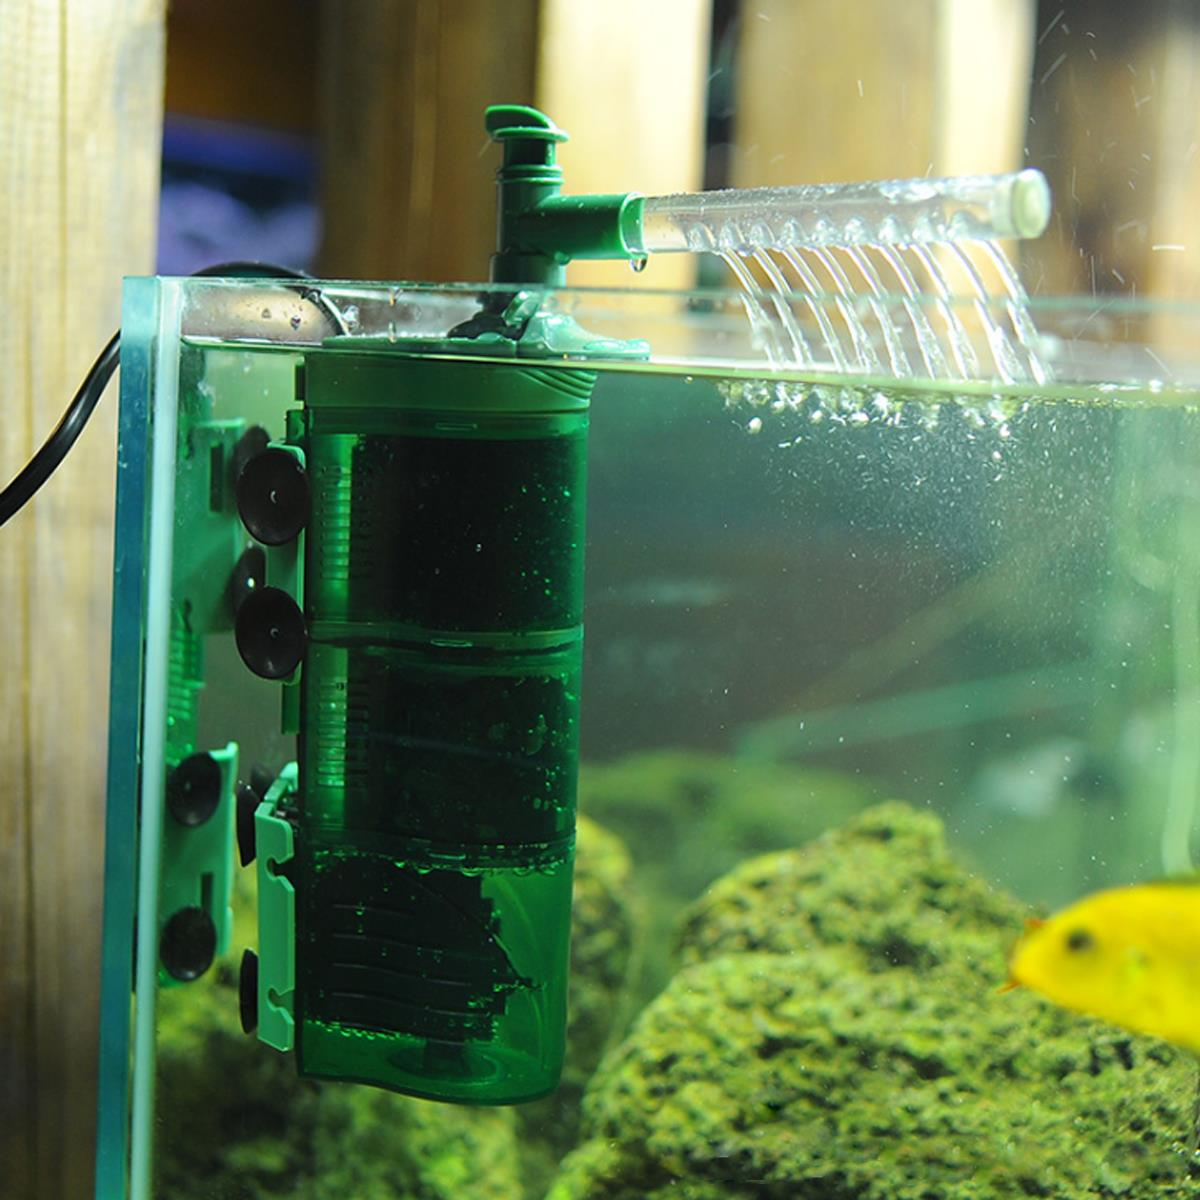 3-in-1-Aquarium-Internal-Filter-Submersible-Fish-Tank-Water-Circulation-Pump-Aquarium-Air-Pump-1305511